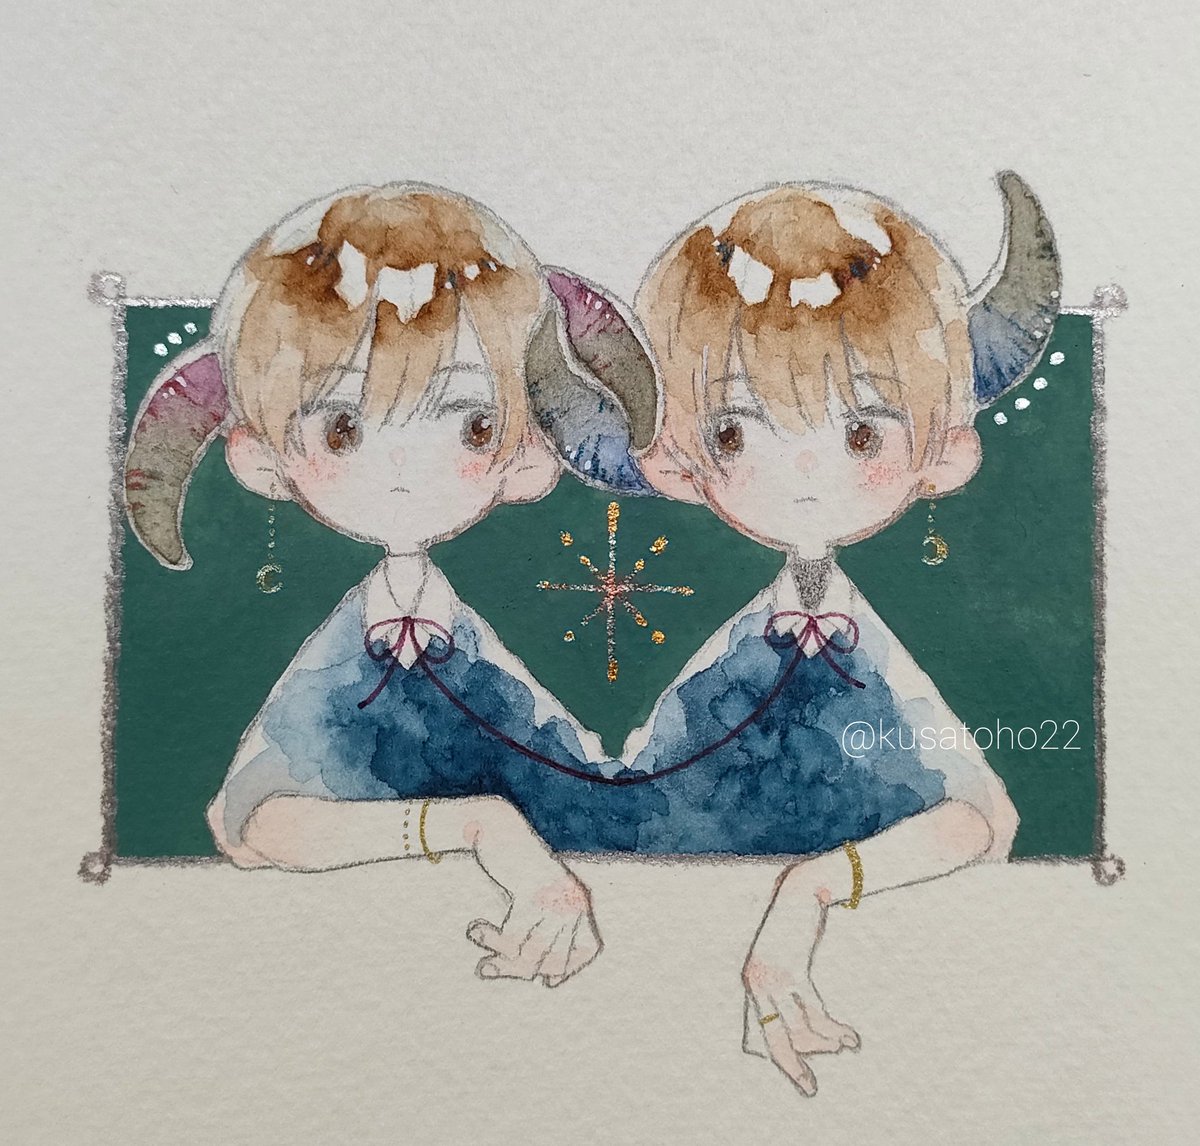 「#いい双子の日 」|檸(ねい)のイラスト